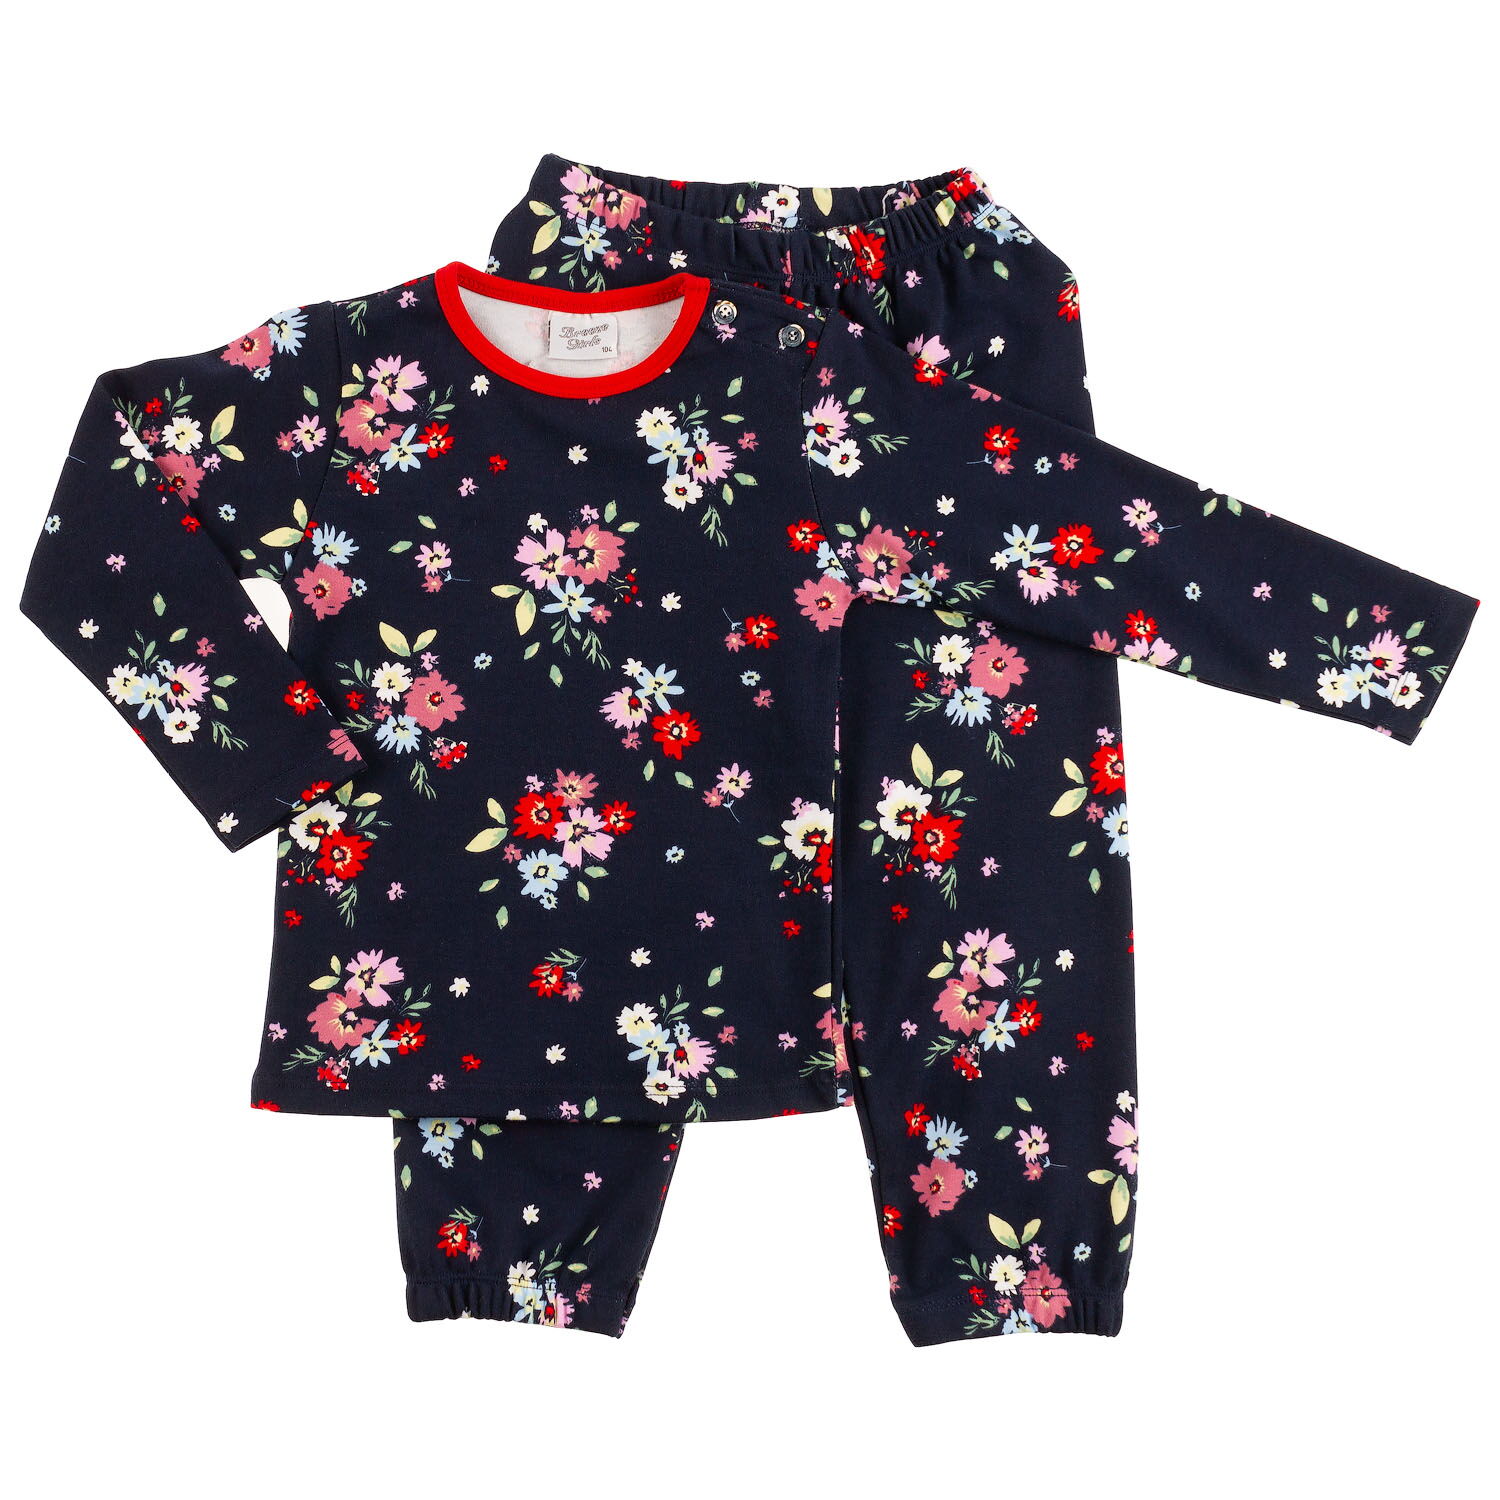 Пижама для девочки Breeze Цветы темно-синяя 8382 - цена